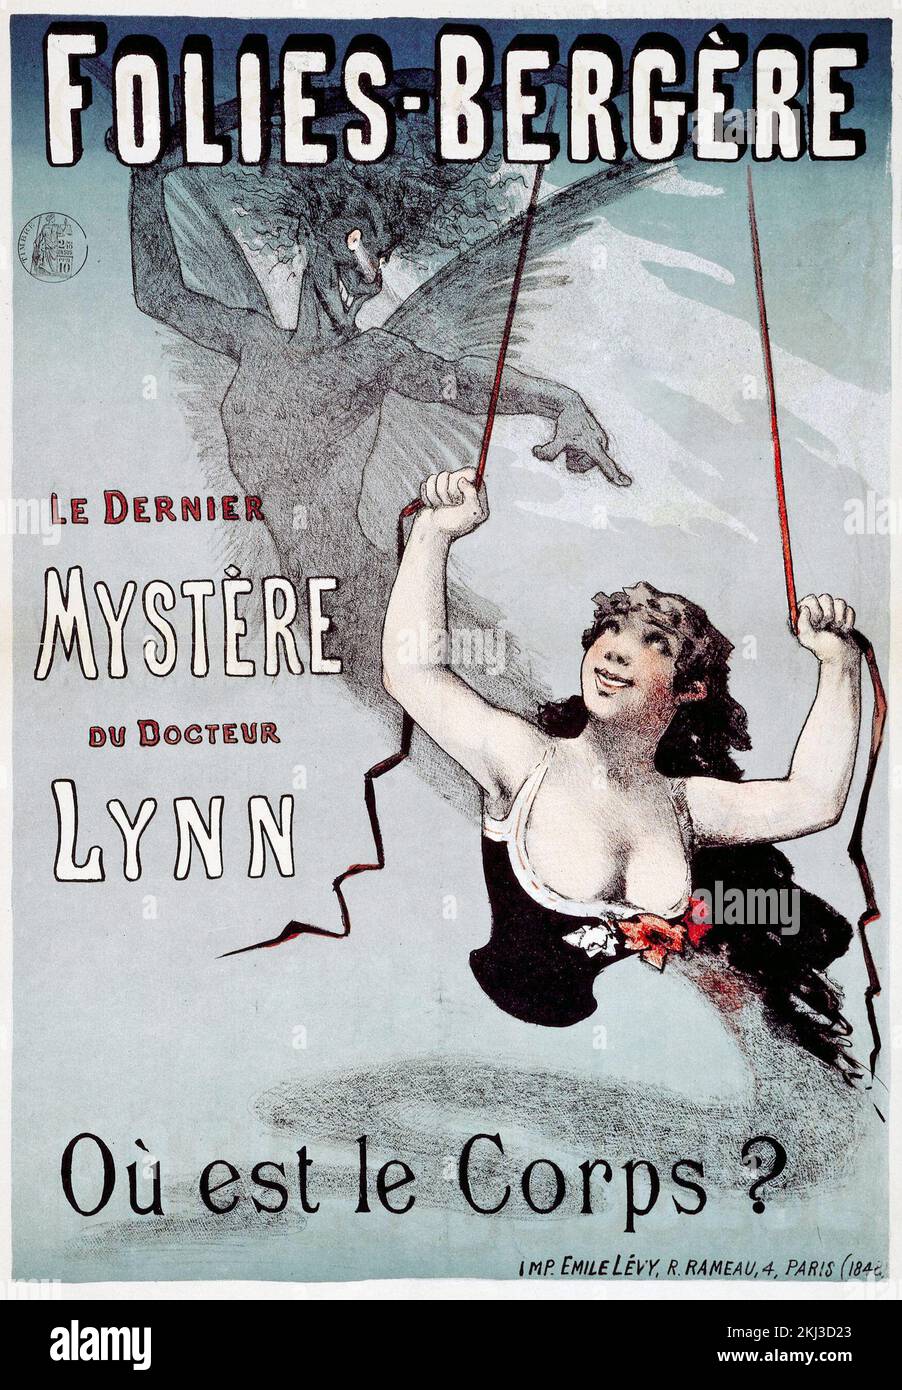 Póster vintage - Folies Bergere - Où est passé le corps, Le Dernier Mystere du docteur Lynn - c 1885 - autor desconocido - póster francés Foto de stock